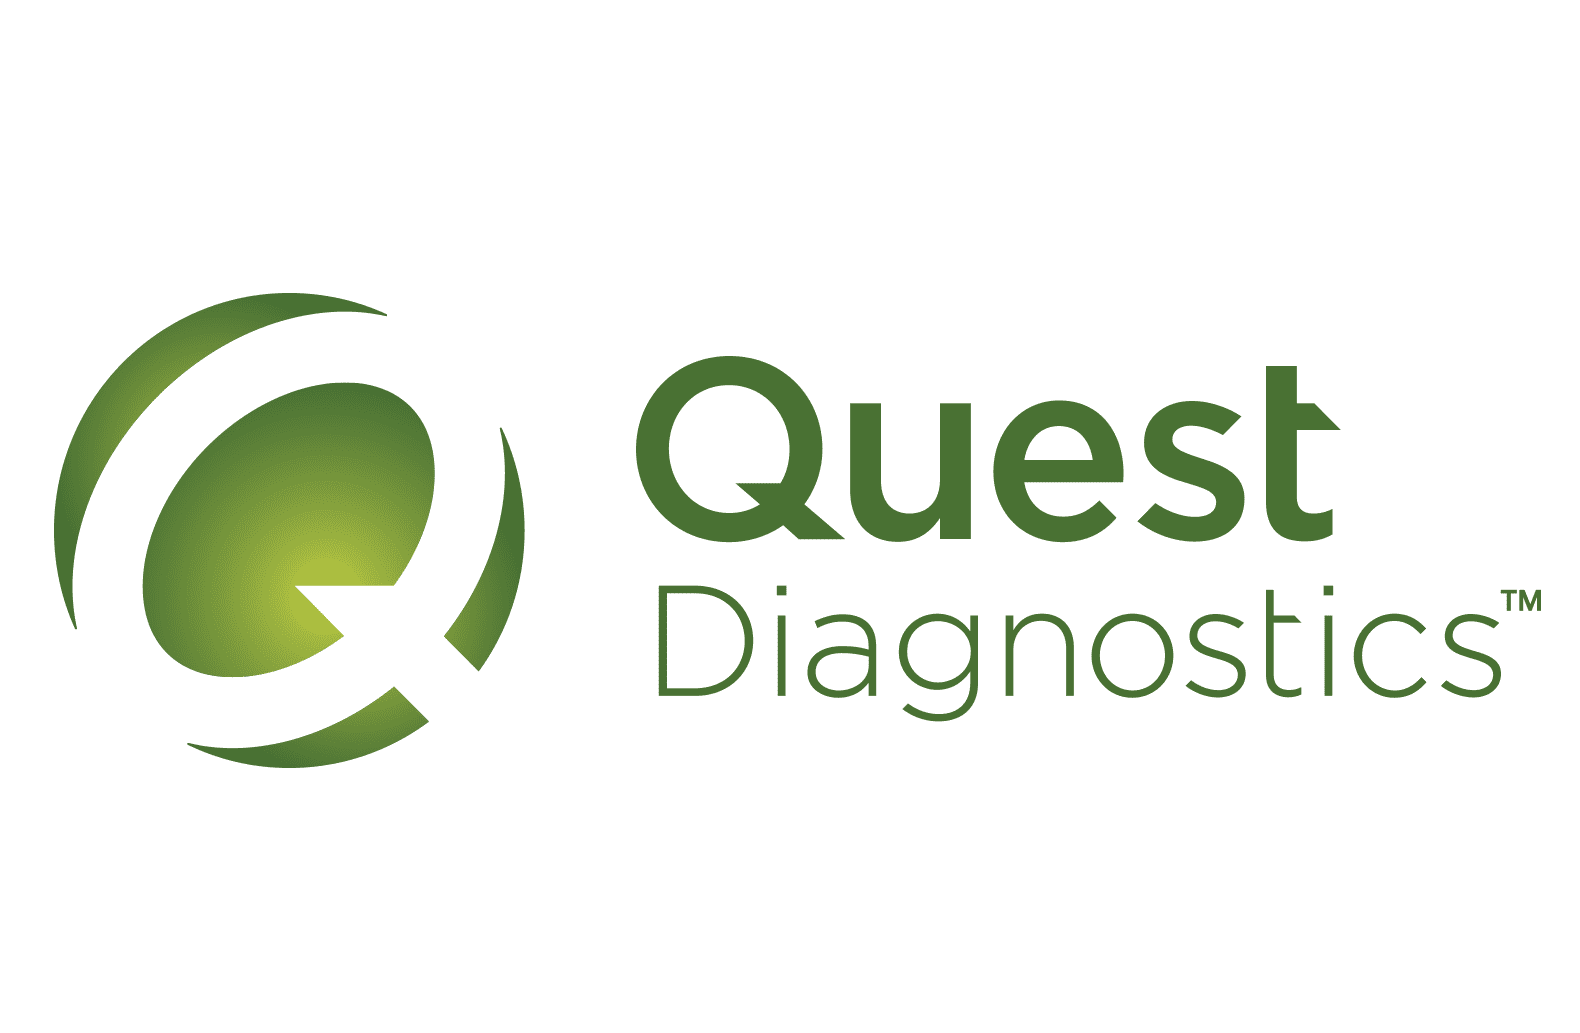 quest diagnostics schedule an appointment